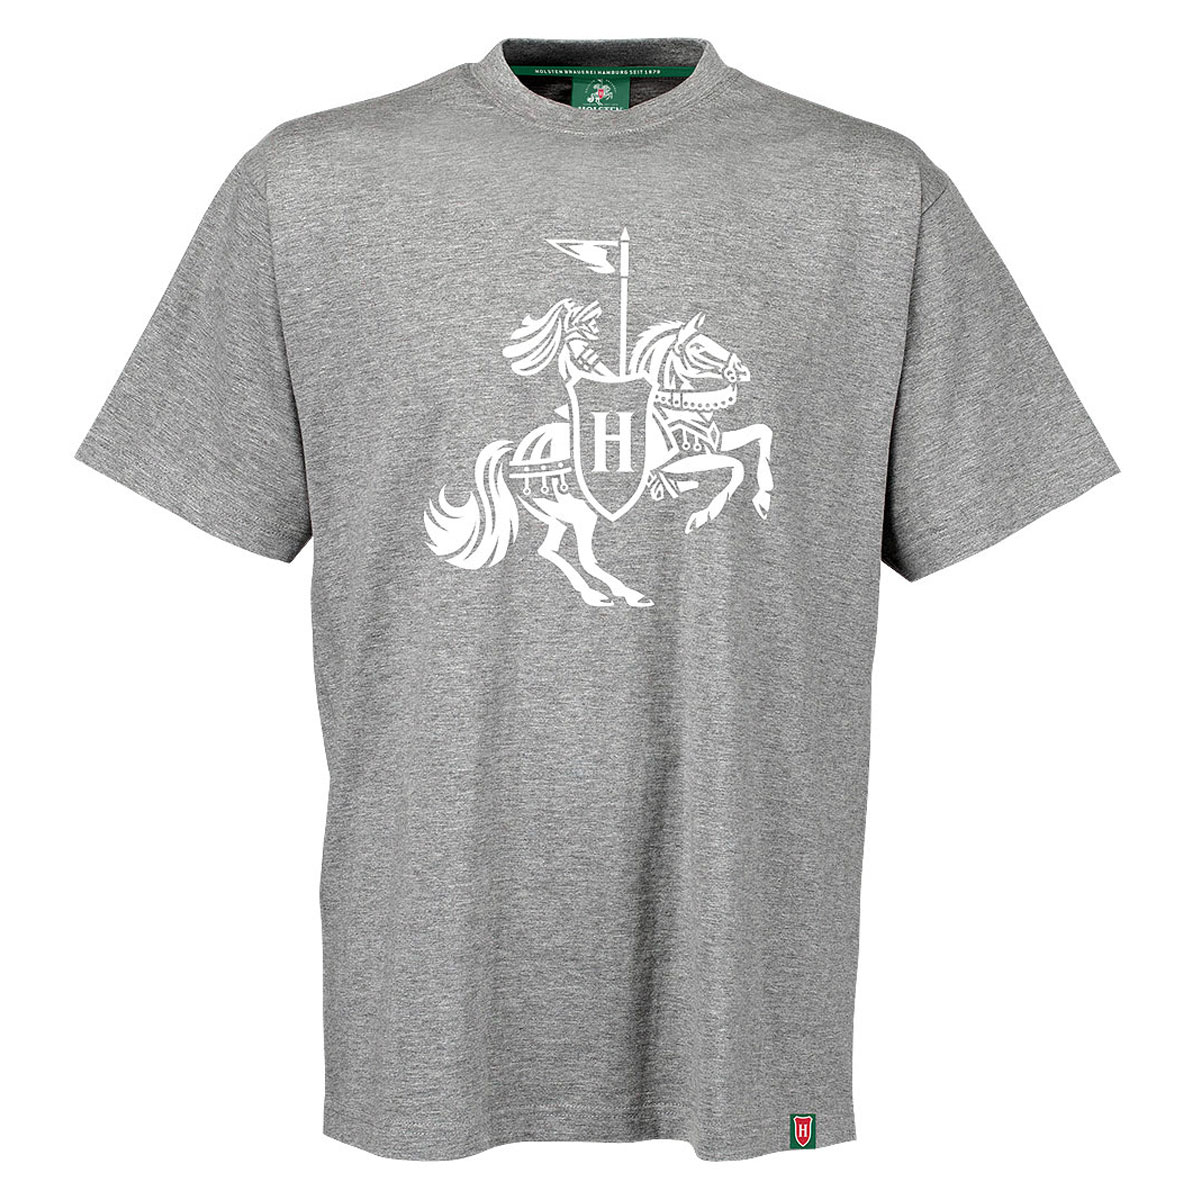 Herren-T-Shirt, grau-meliert „Ritter“ groß